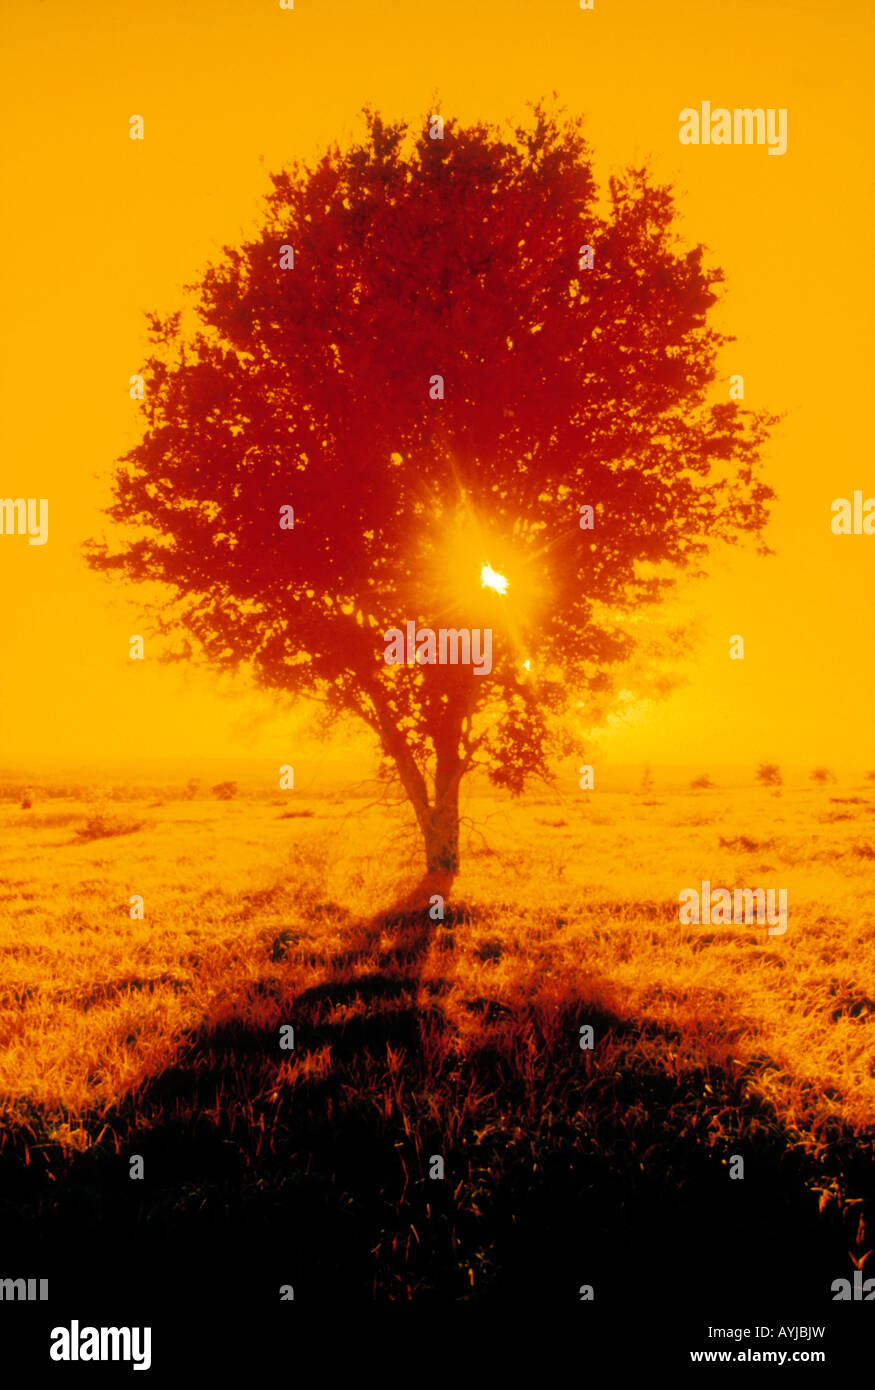 Una quercia photograhed utilizzando il colore della pellicola a raggi infrarossi, tutti i colori caldi con sun burst semina attraverso i rami degli alberi. Foto Stock